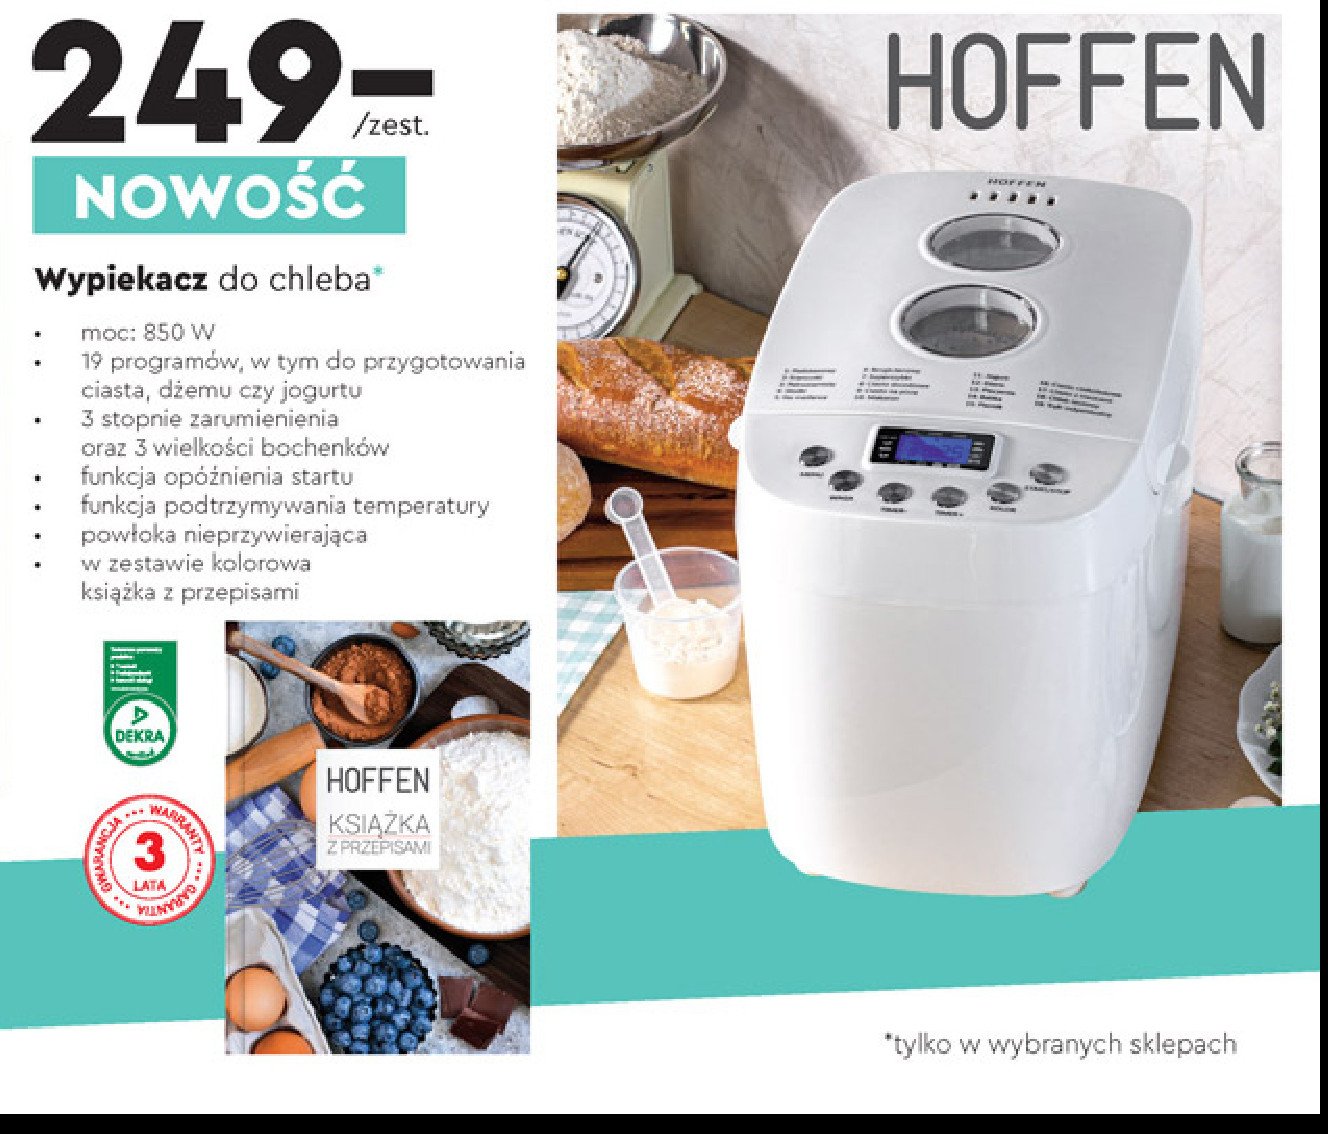 look in afternoon Duke Urządzenie do wypieku chleba Hoffen everyday - cena - promocje - opinie -  sklep | Blix.pl